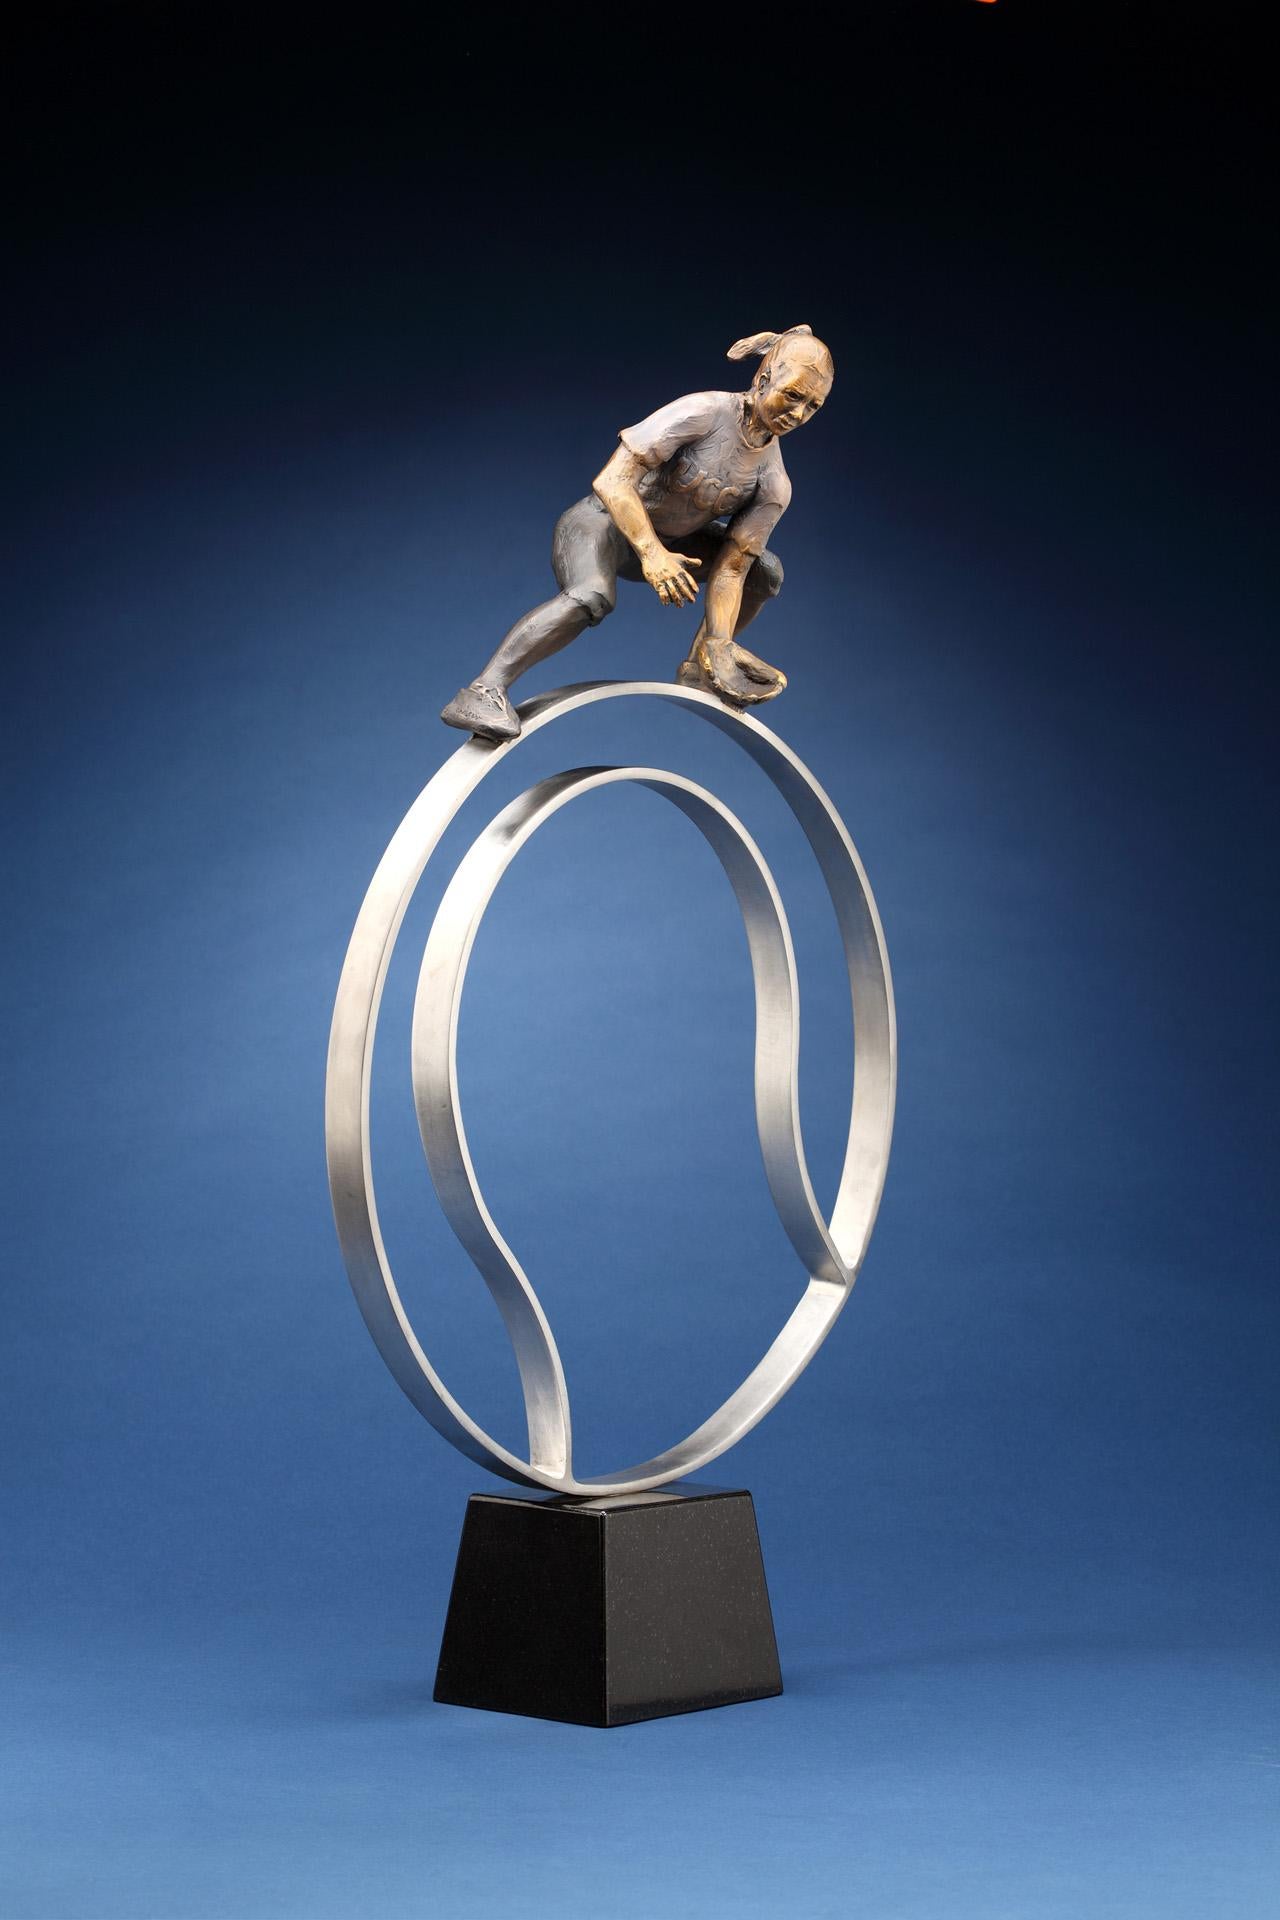 Der Exzellenz gewidmet von Denny Haskew
Bildliche Darstellung ​Softballspieler auf einem abstrakten Softball
Bronze/Edelstahl
27x16x6